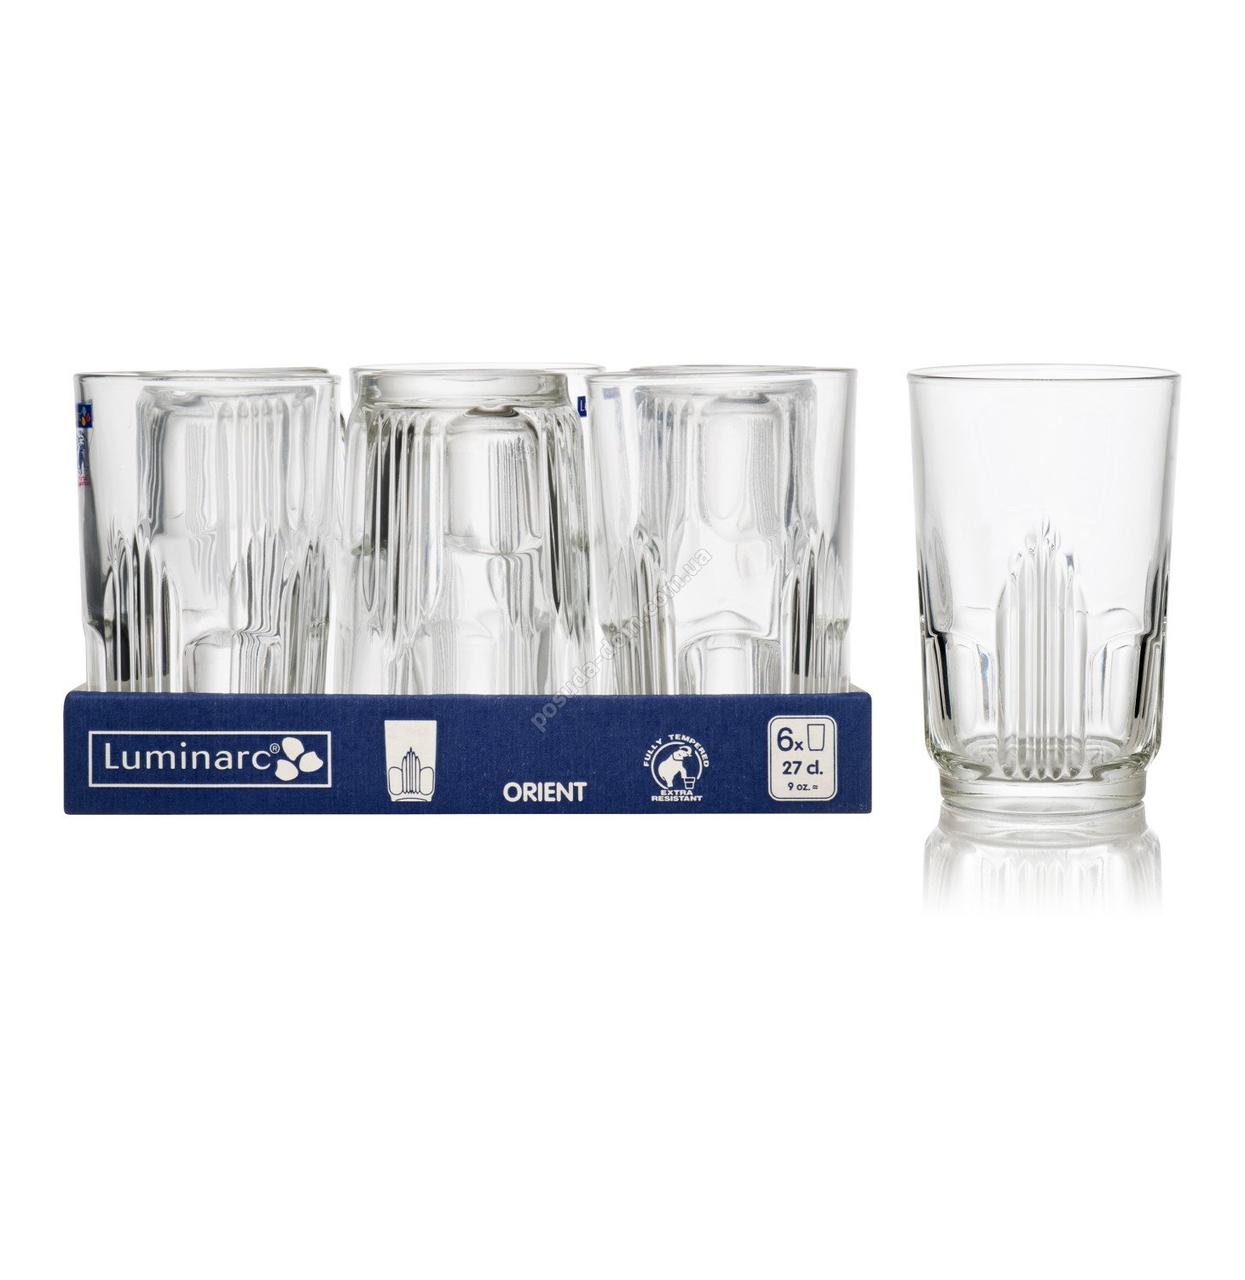 ORIENT стаканы высокие 27 cl 6 шт (L4988)